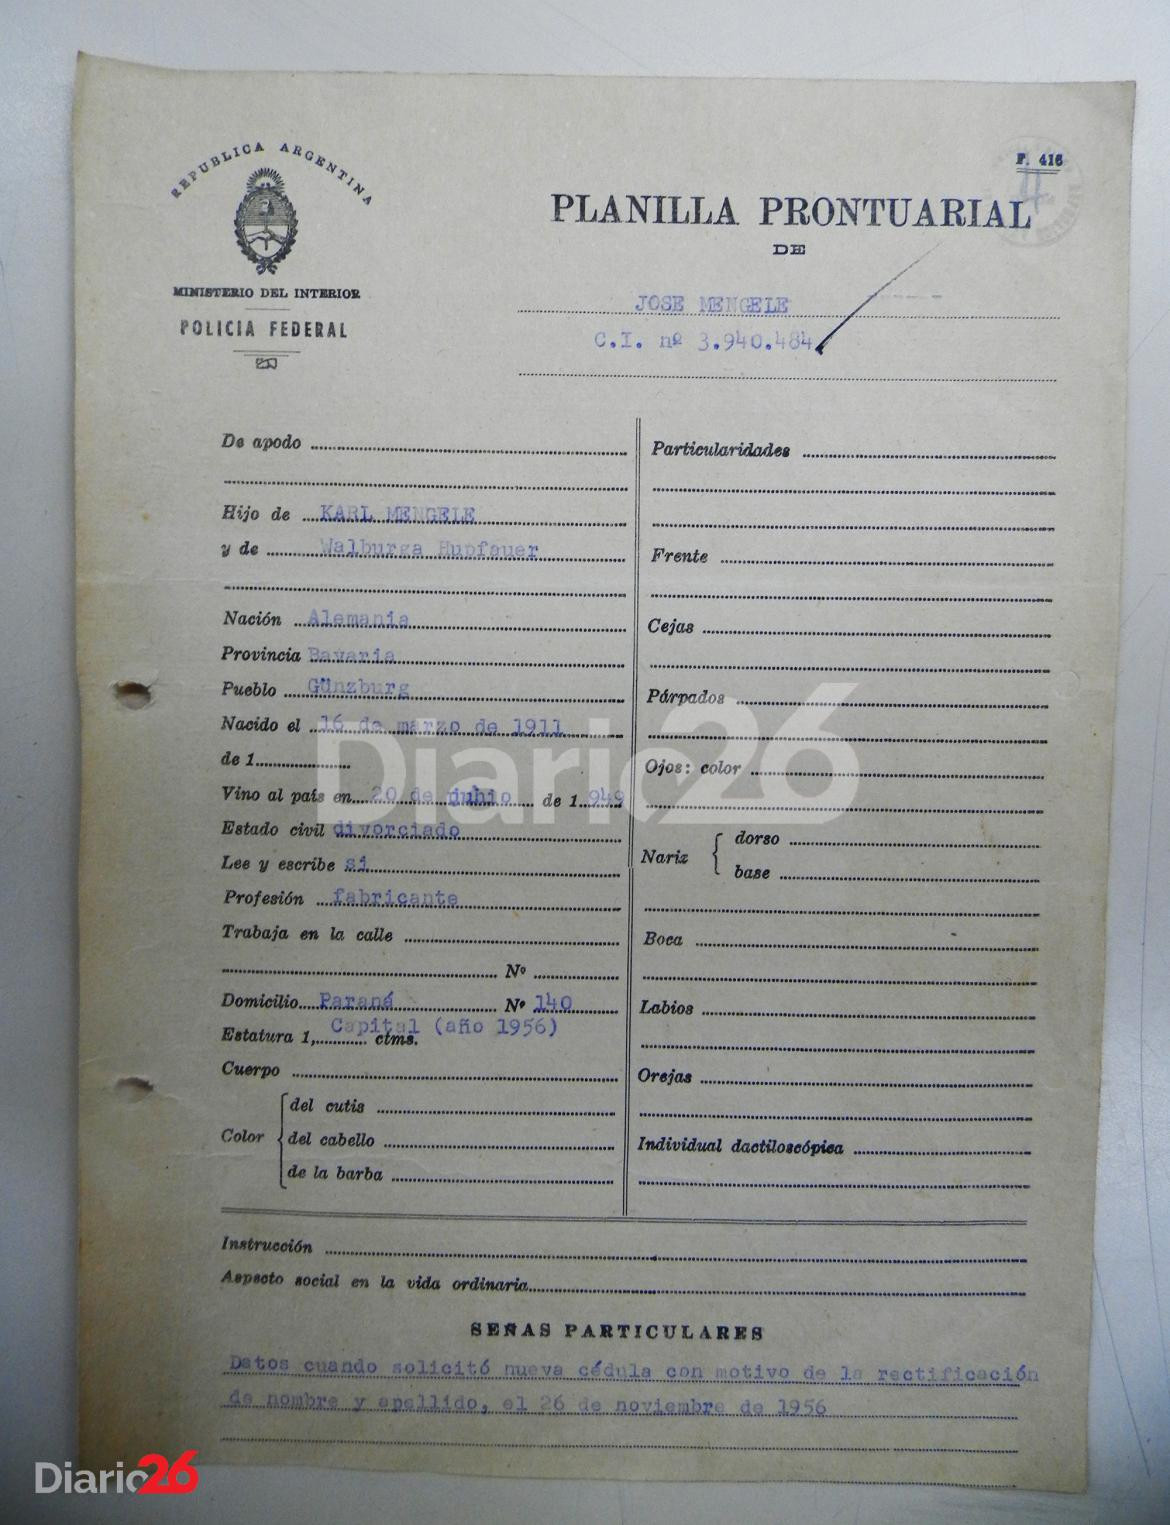 Planilla prontuarial de Josef Mengele con datos de filiación originales tras recuperar su verdadera identidad. Año 1956